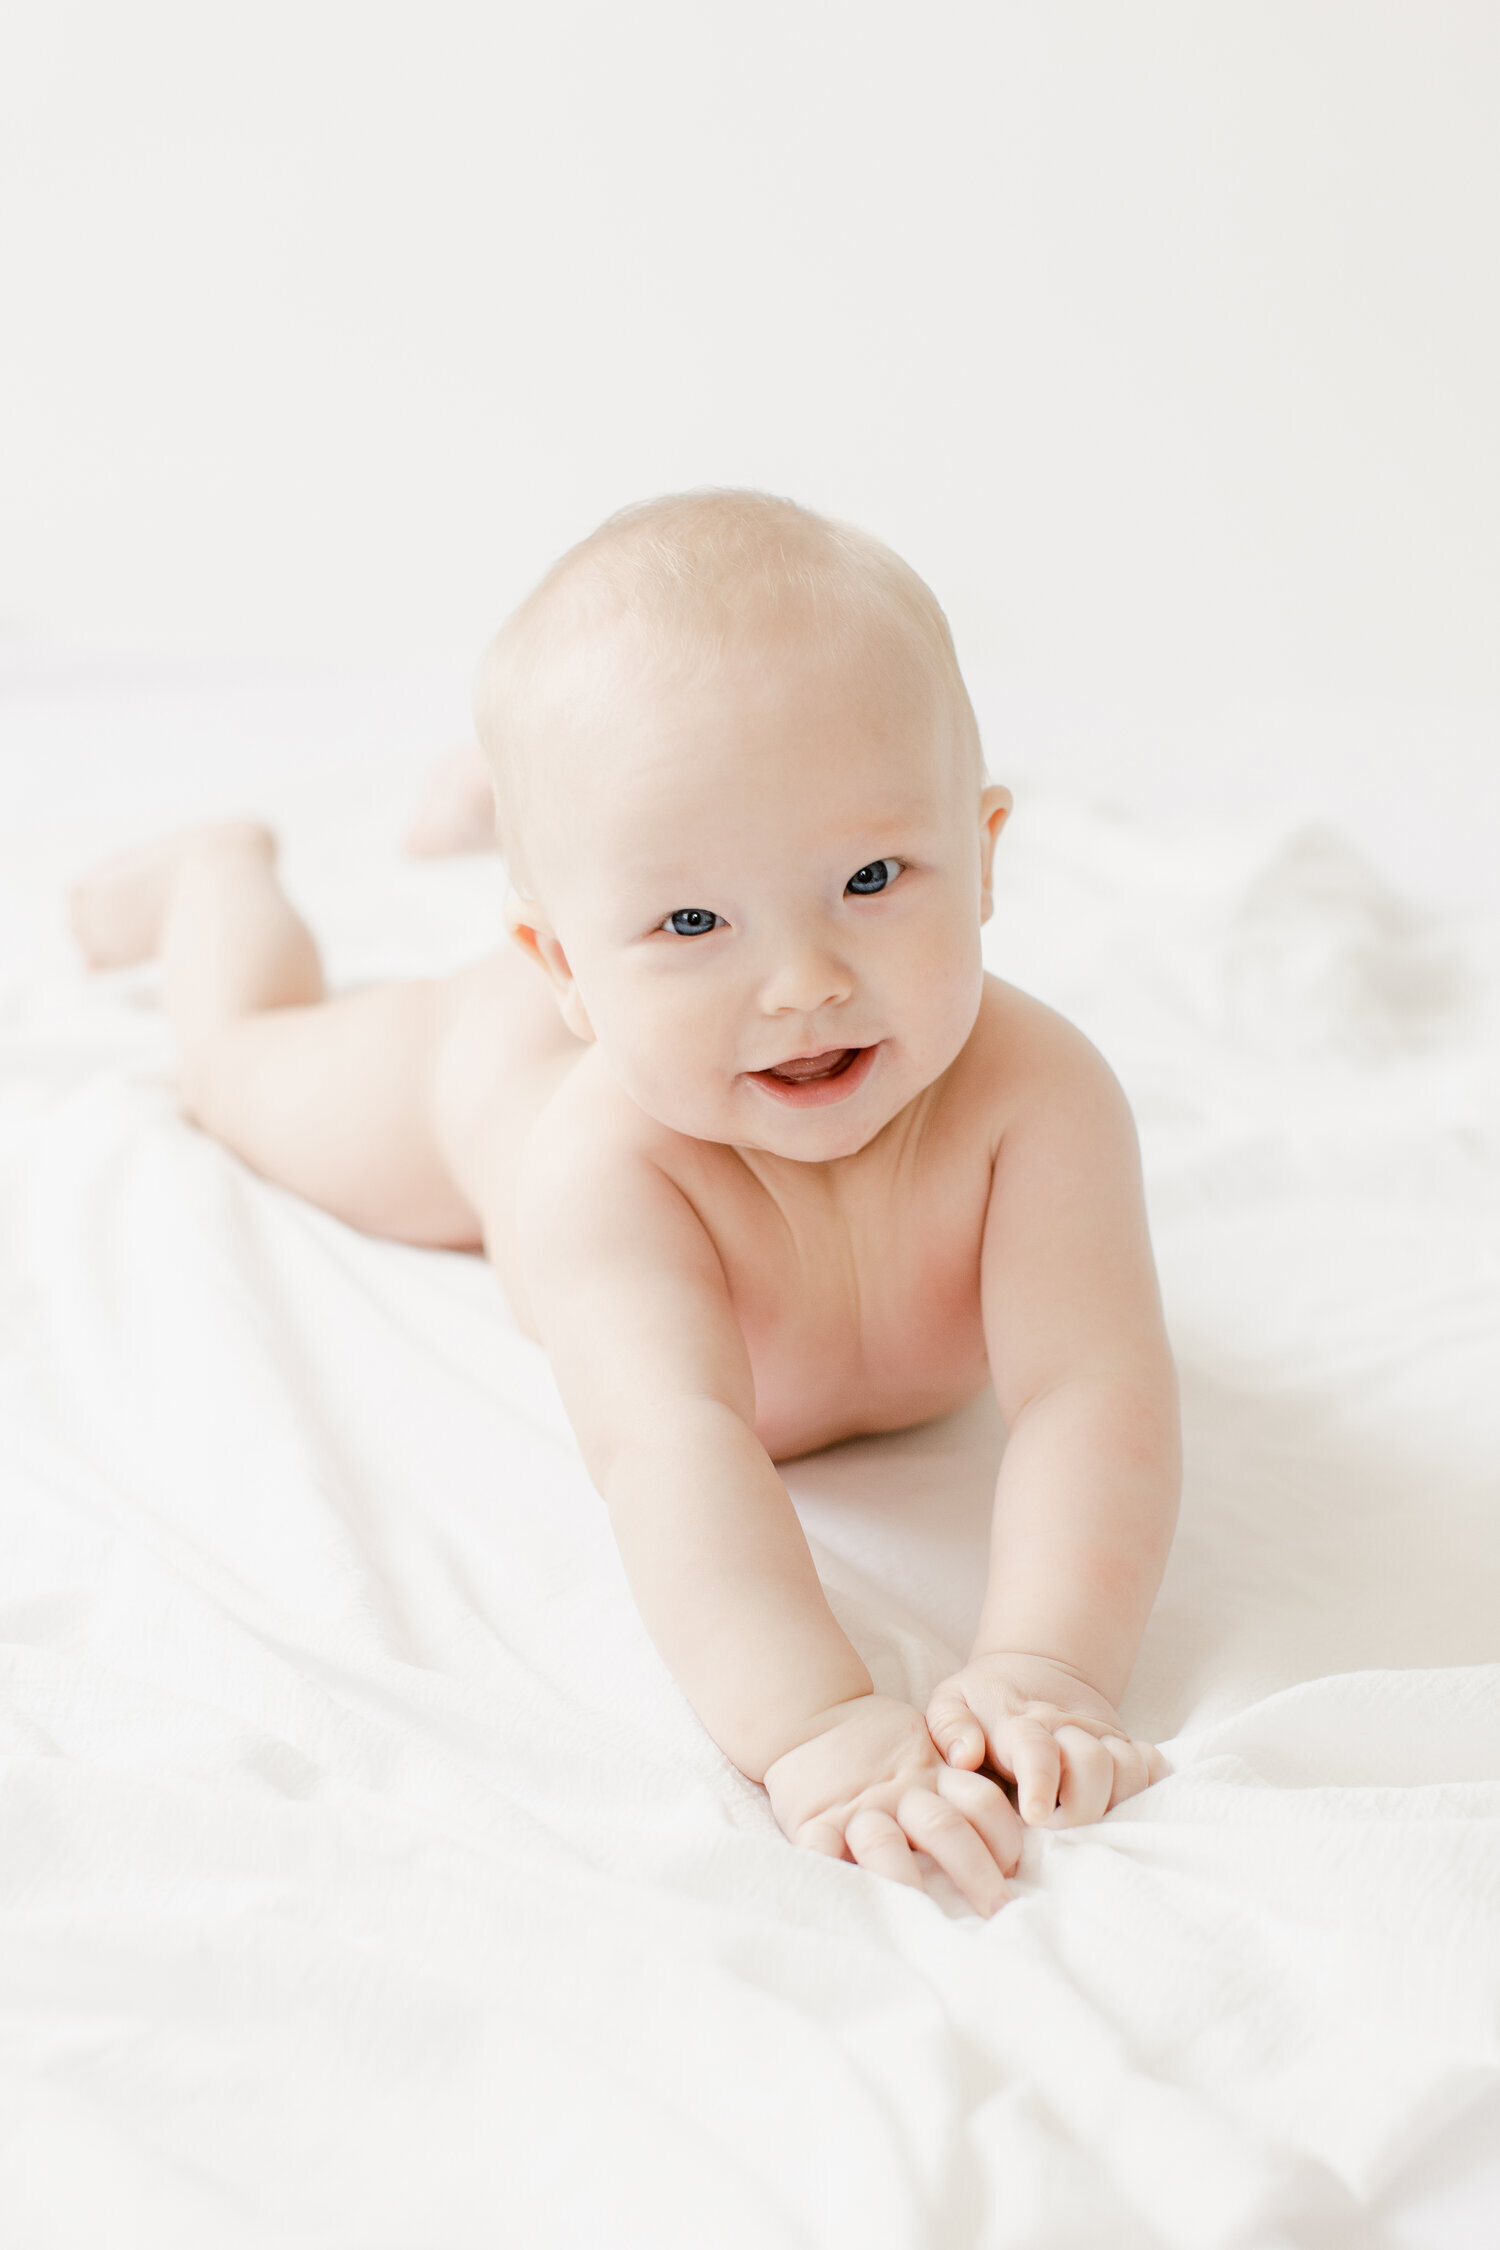 Simple joyful six month old baby in NWA photography studio